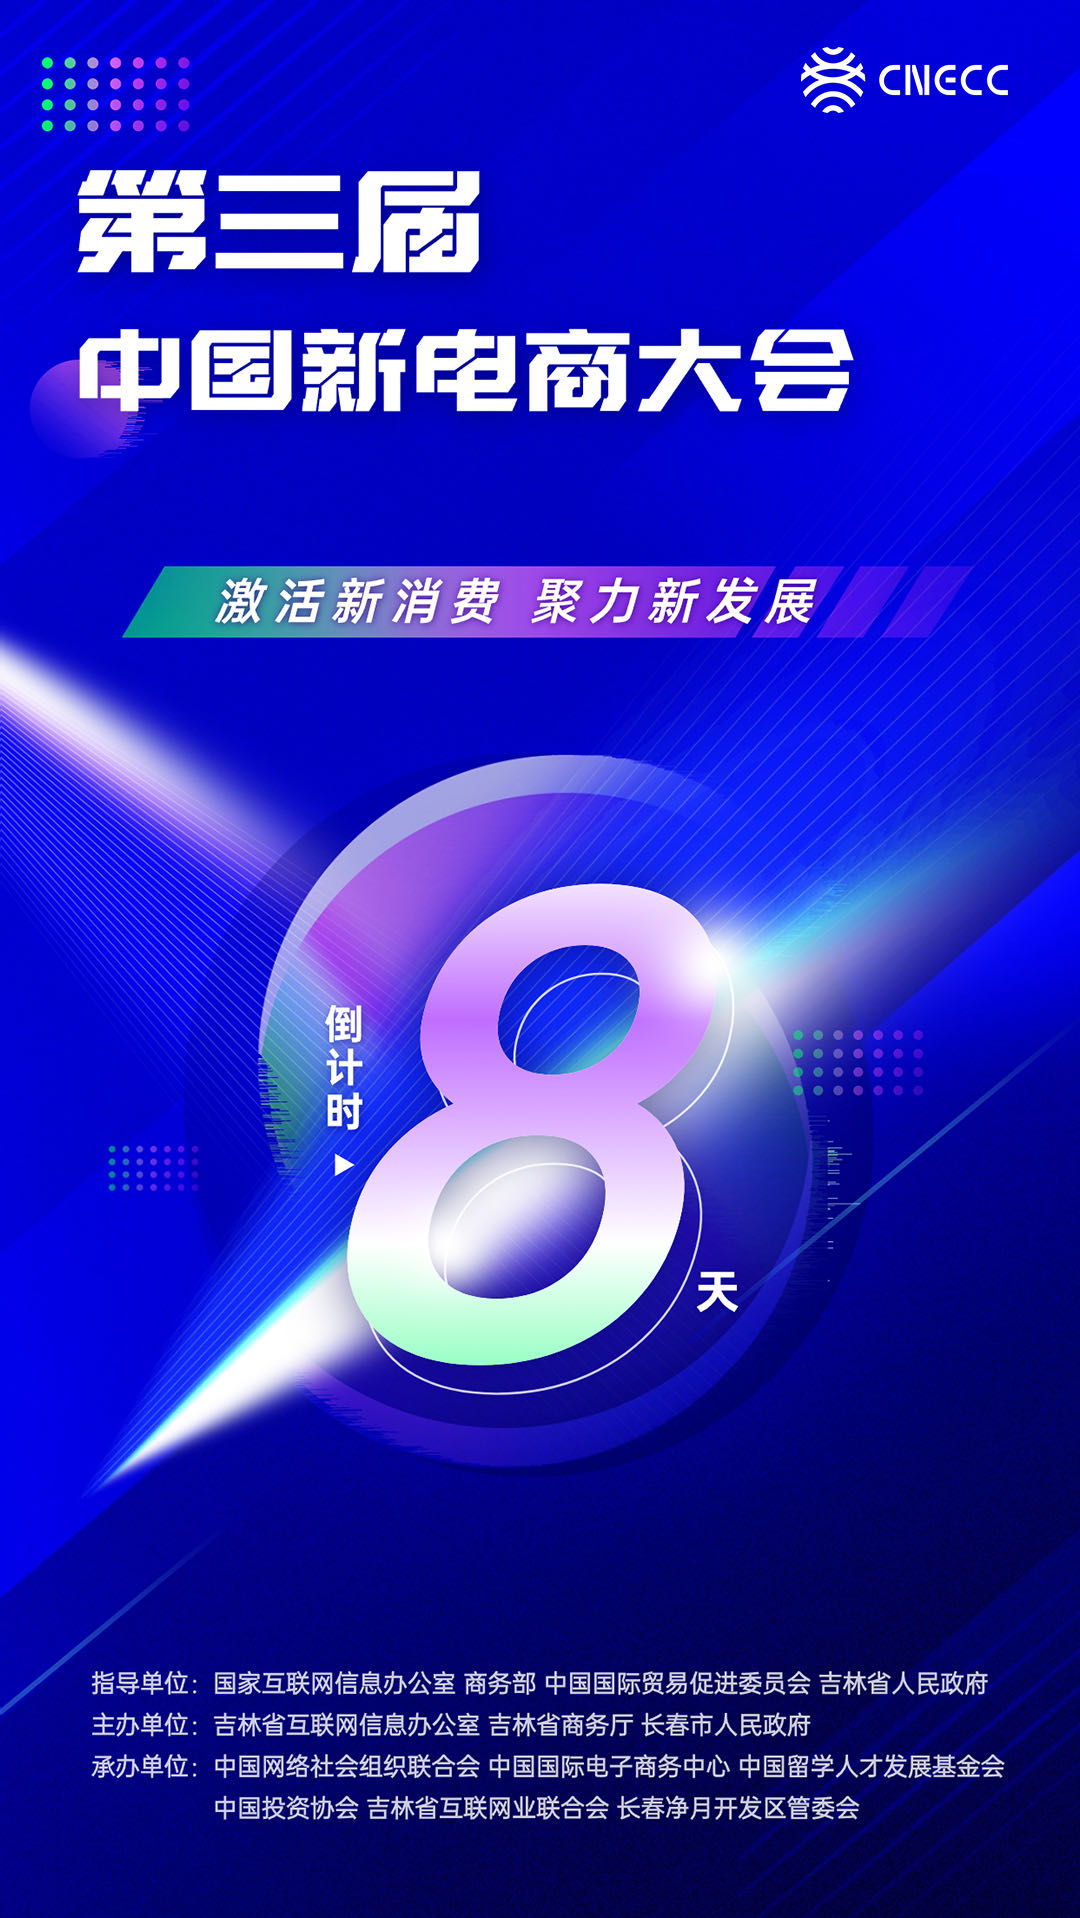 倒计时8天！ 第三届中国新电商大会即将开幕 ！